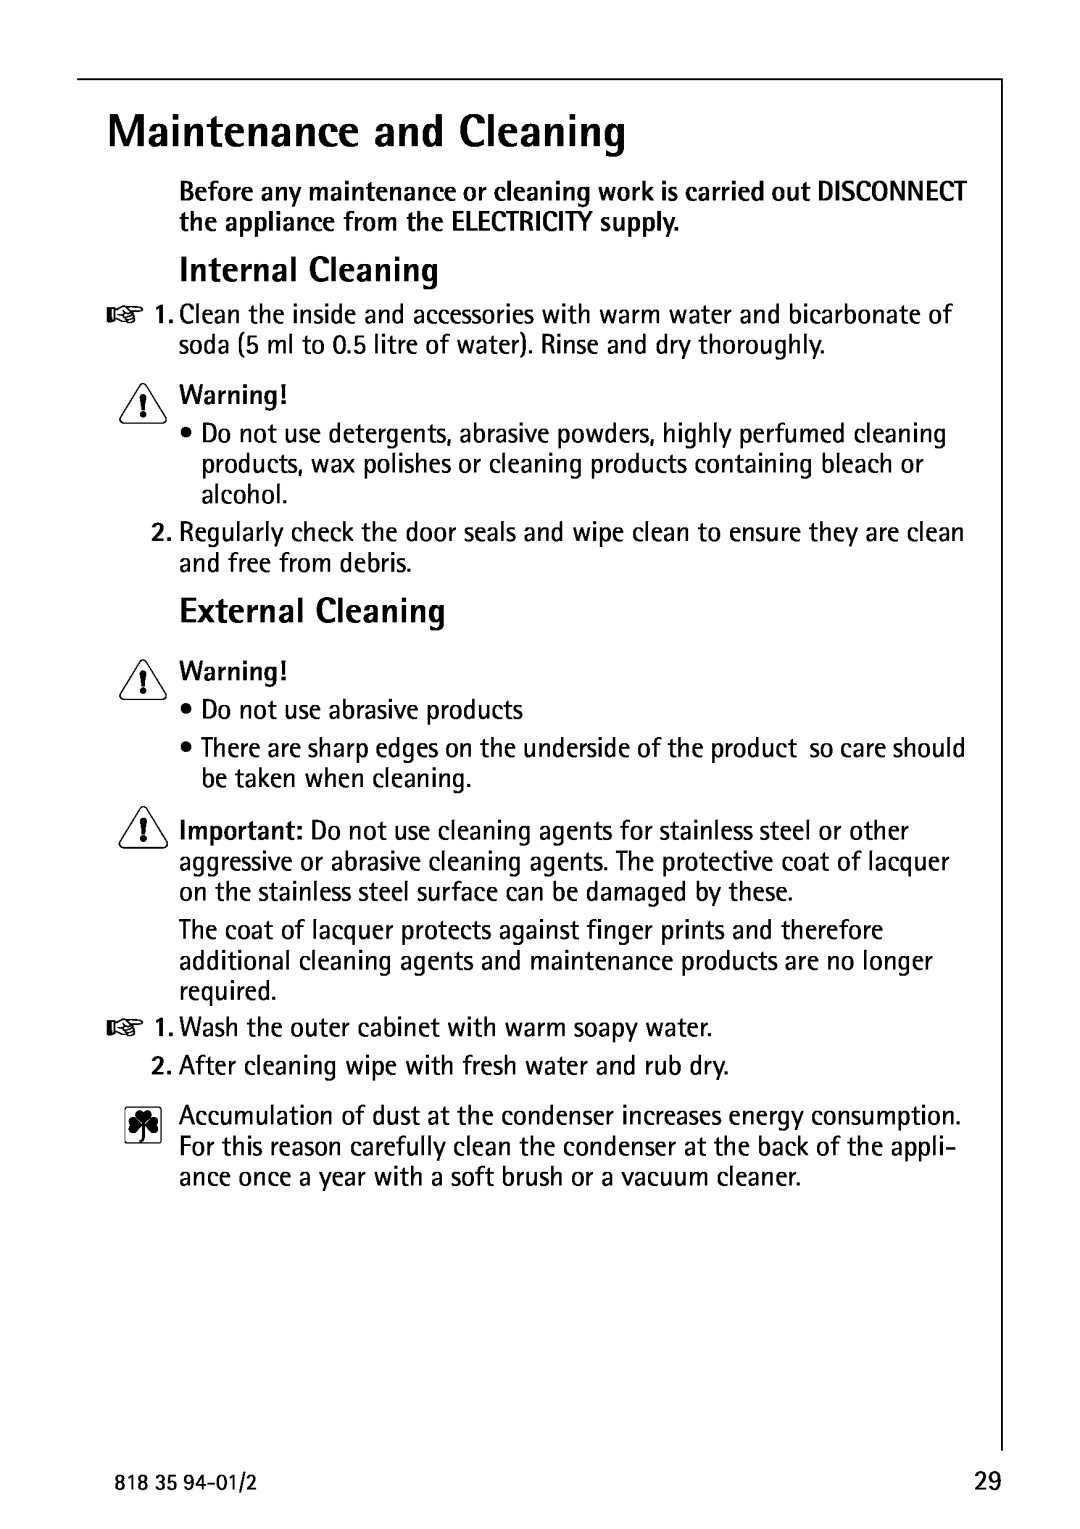 Electrolux U31462 operating instructions Maintenance and Cleaning, Internal Cleaning, External Cleaning, Warning 